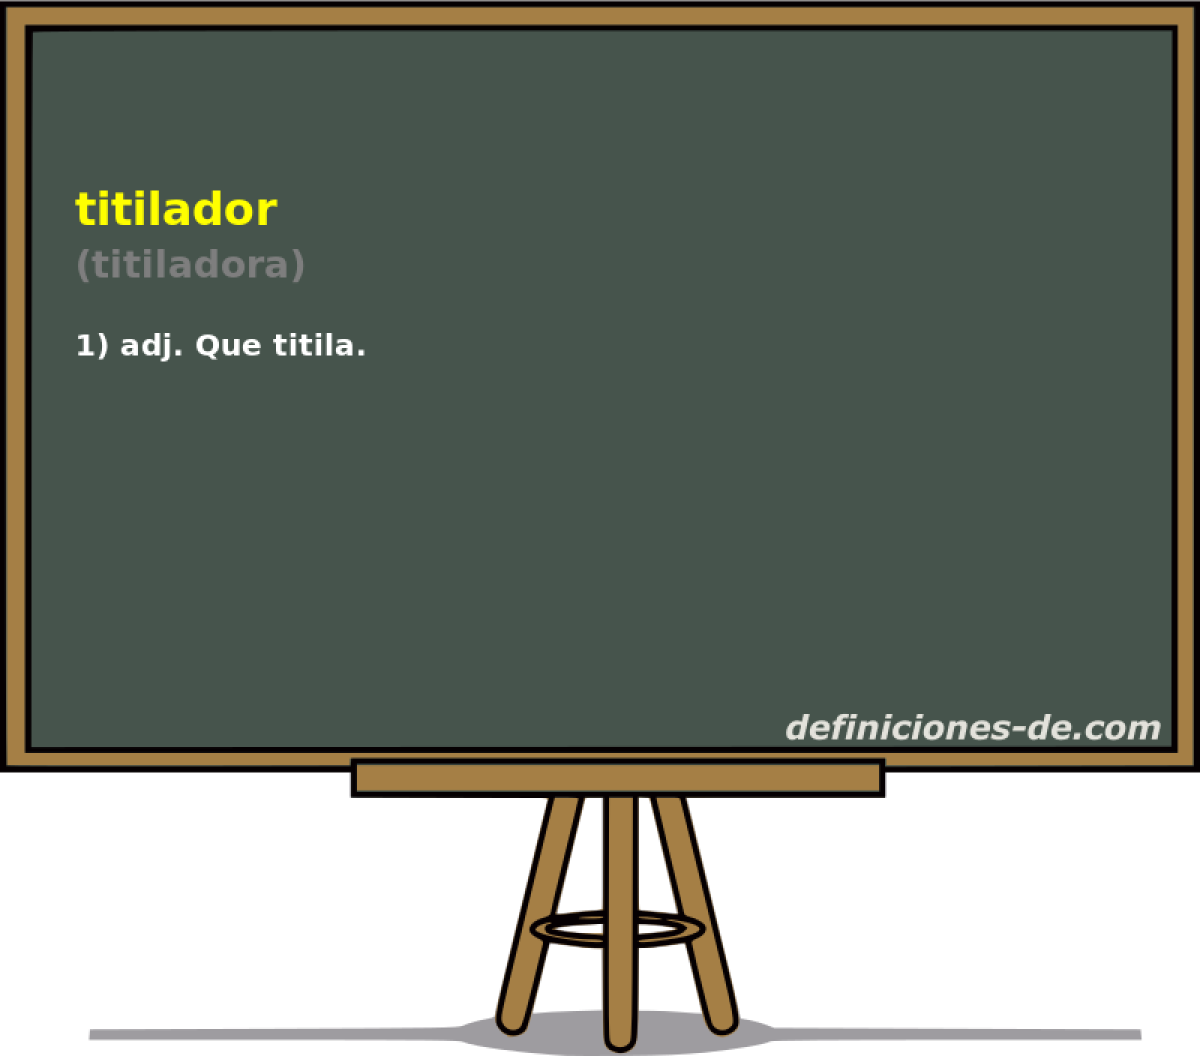 titilador (titiladora)